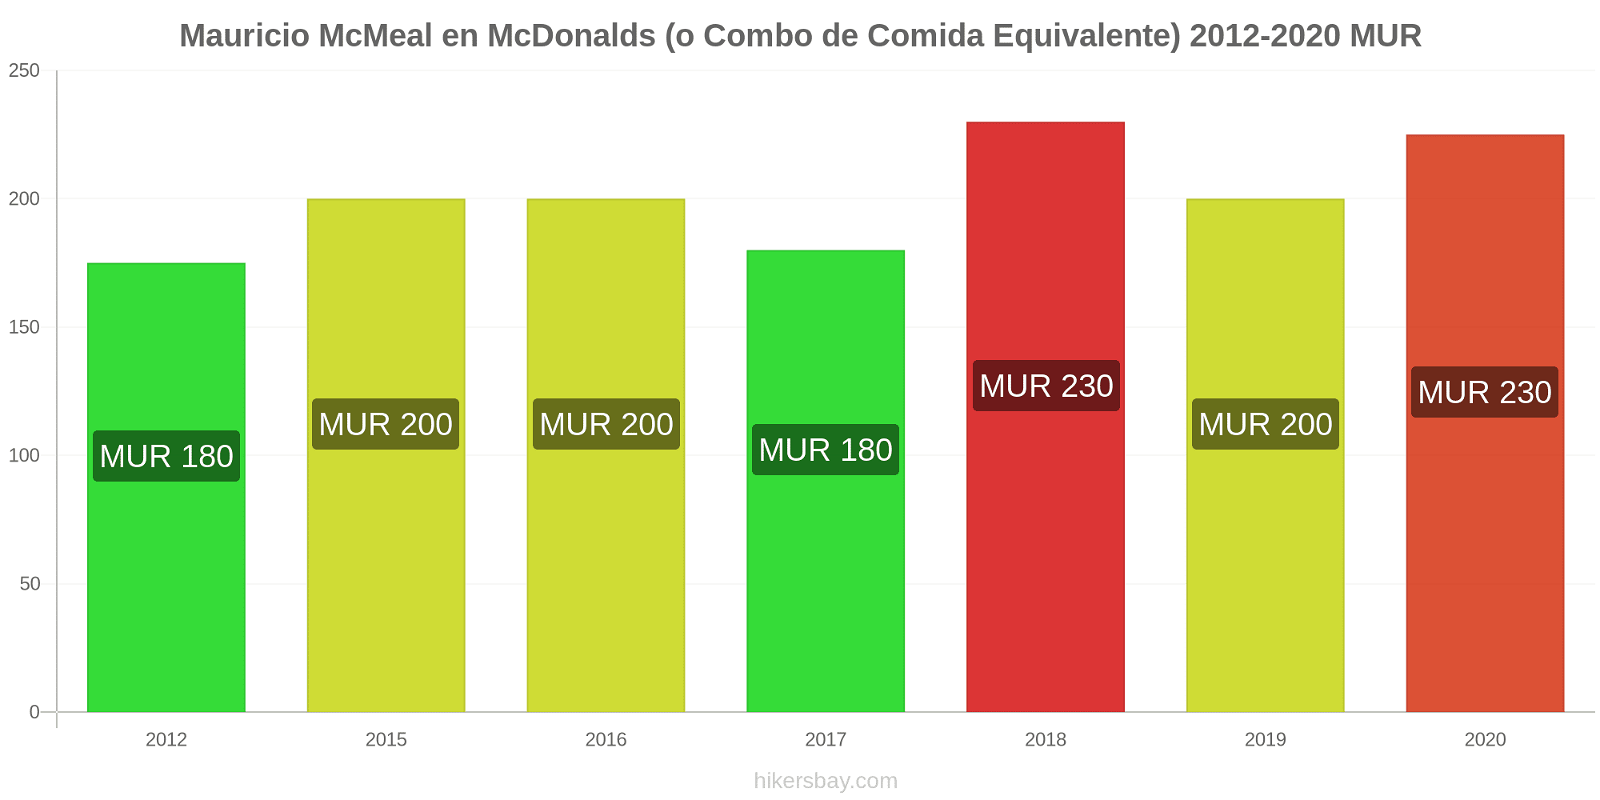 Mauricio cambios de precios McMeal en McDonalds (o menú equivalente) hikersbay.com